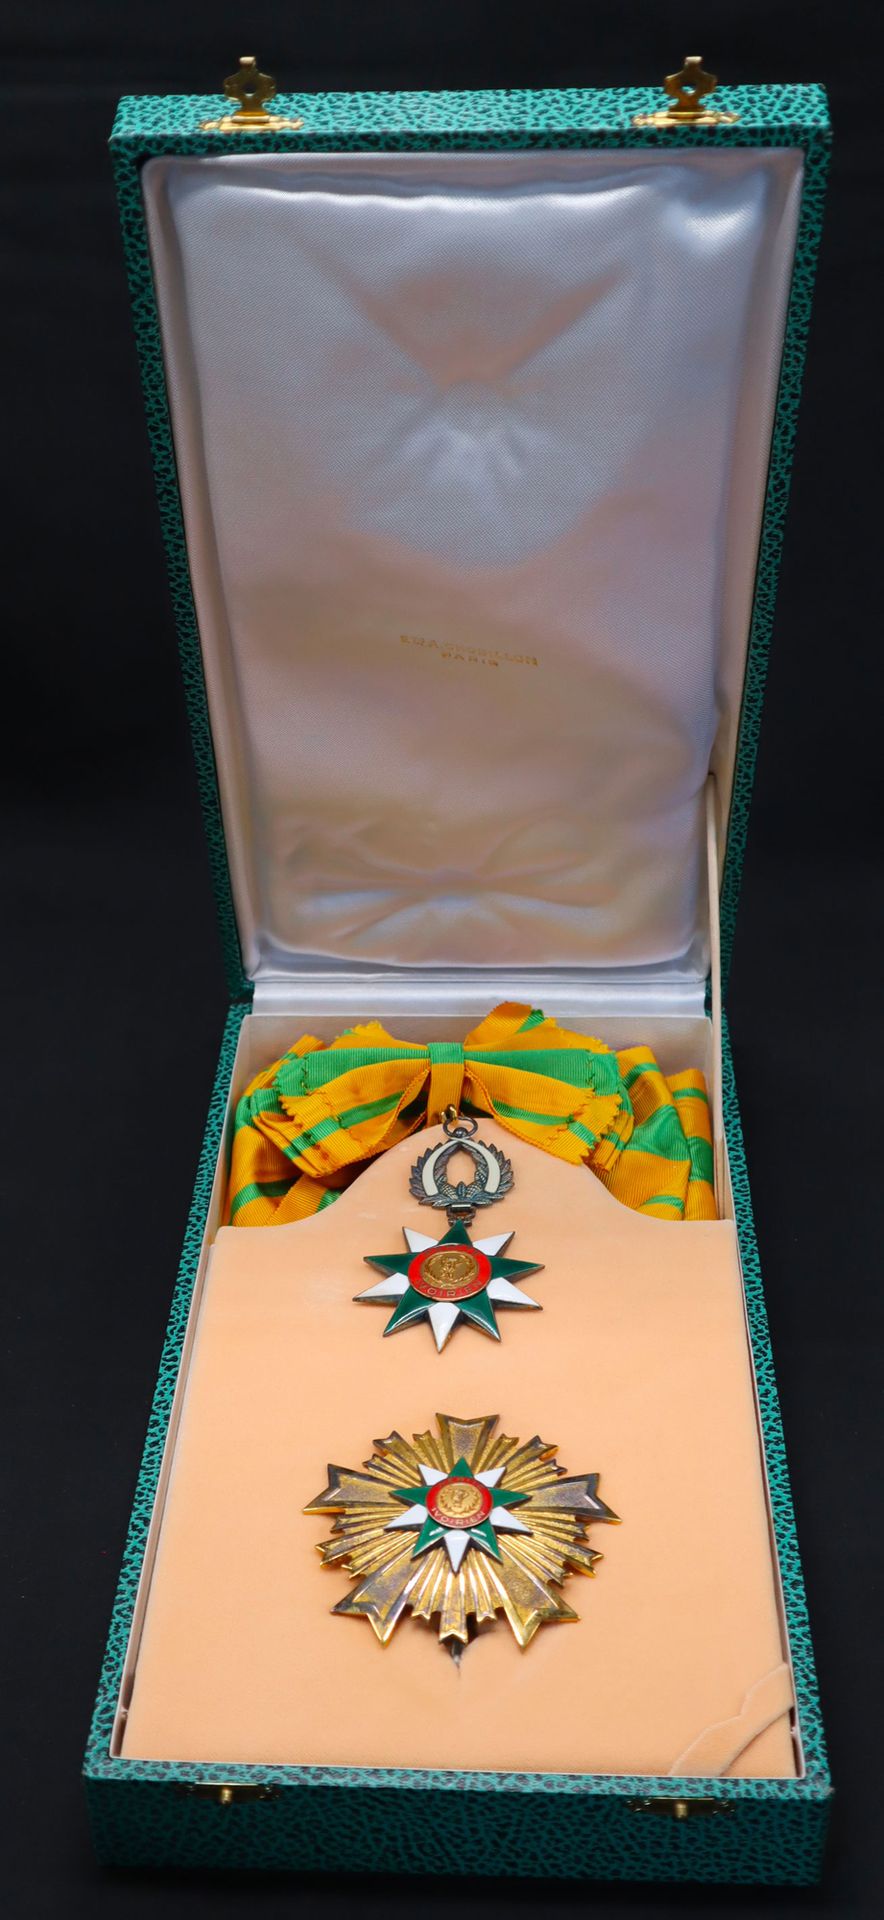 Null Costa d'Avorio - Ordine al Merito della Costa d'Avorio, creato nel 1970, se&hellip;